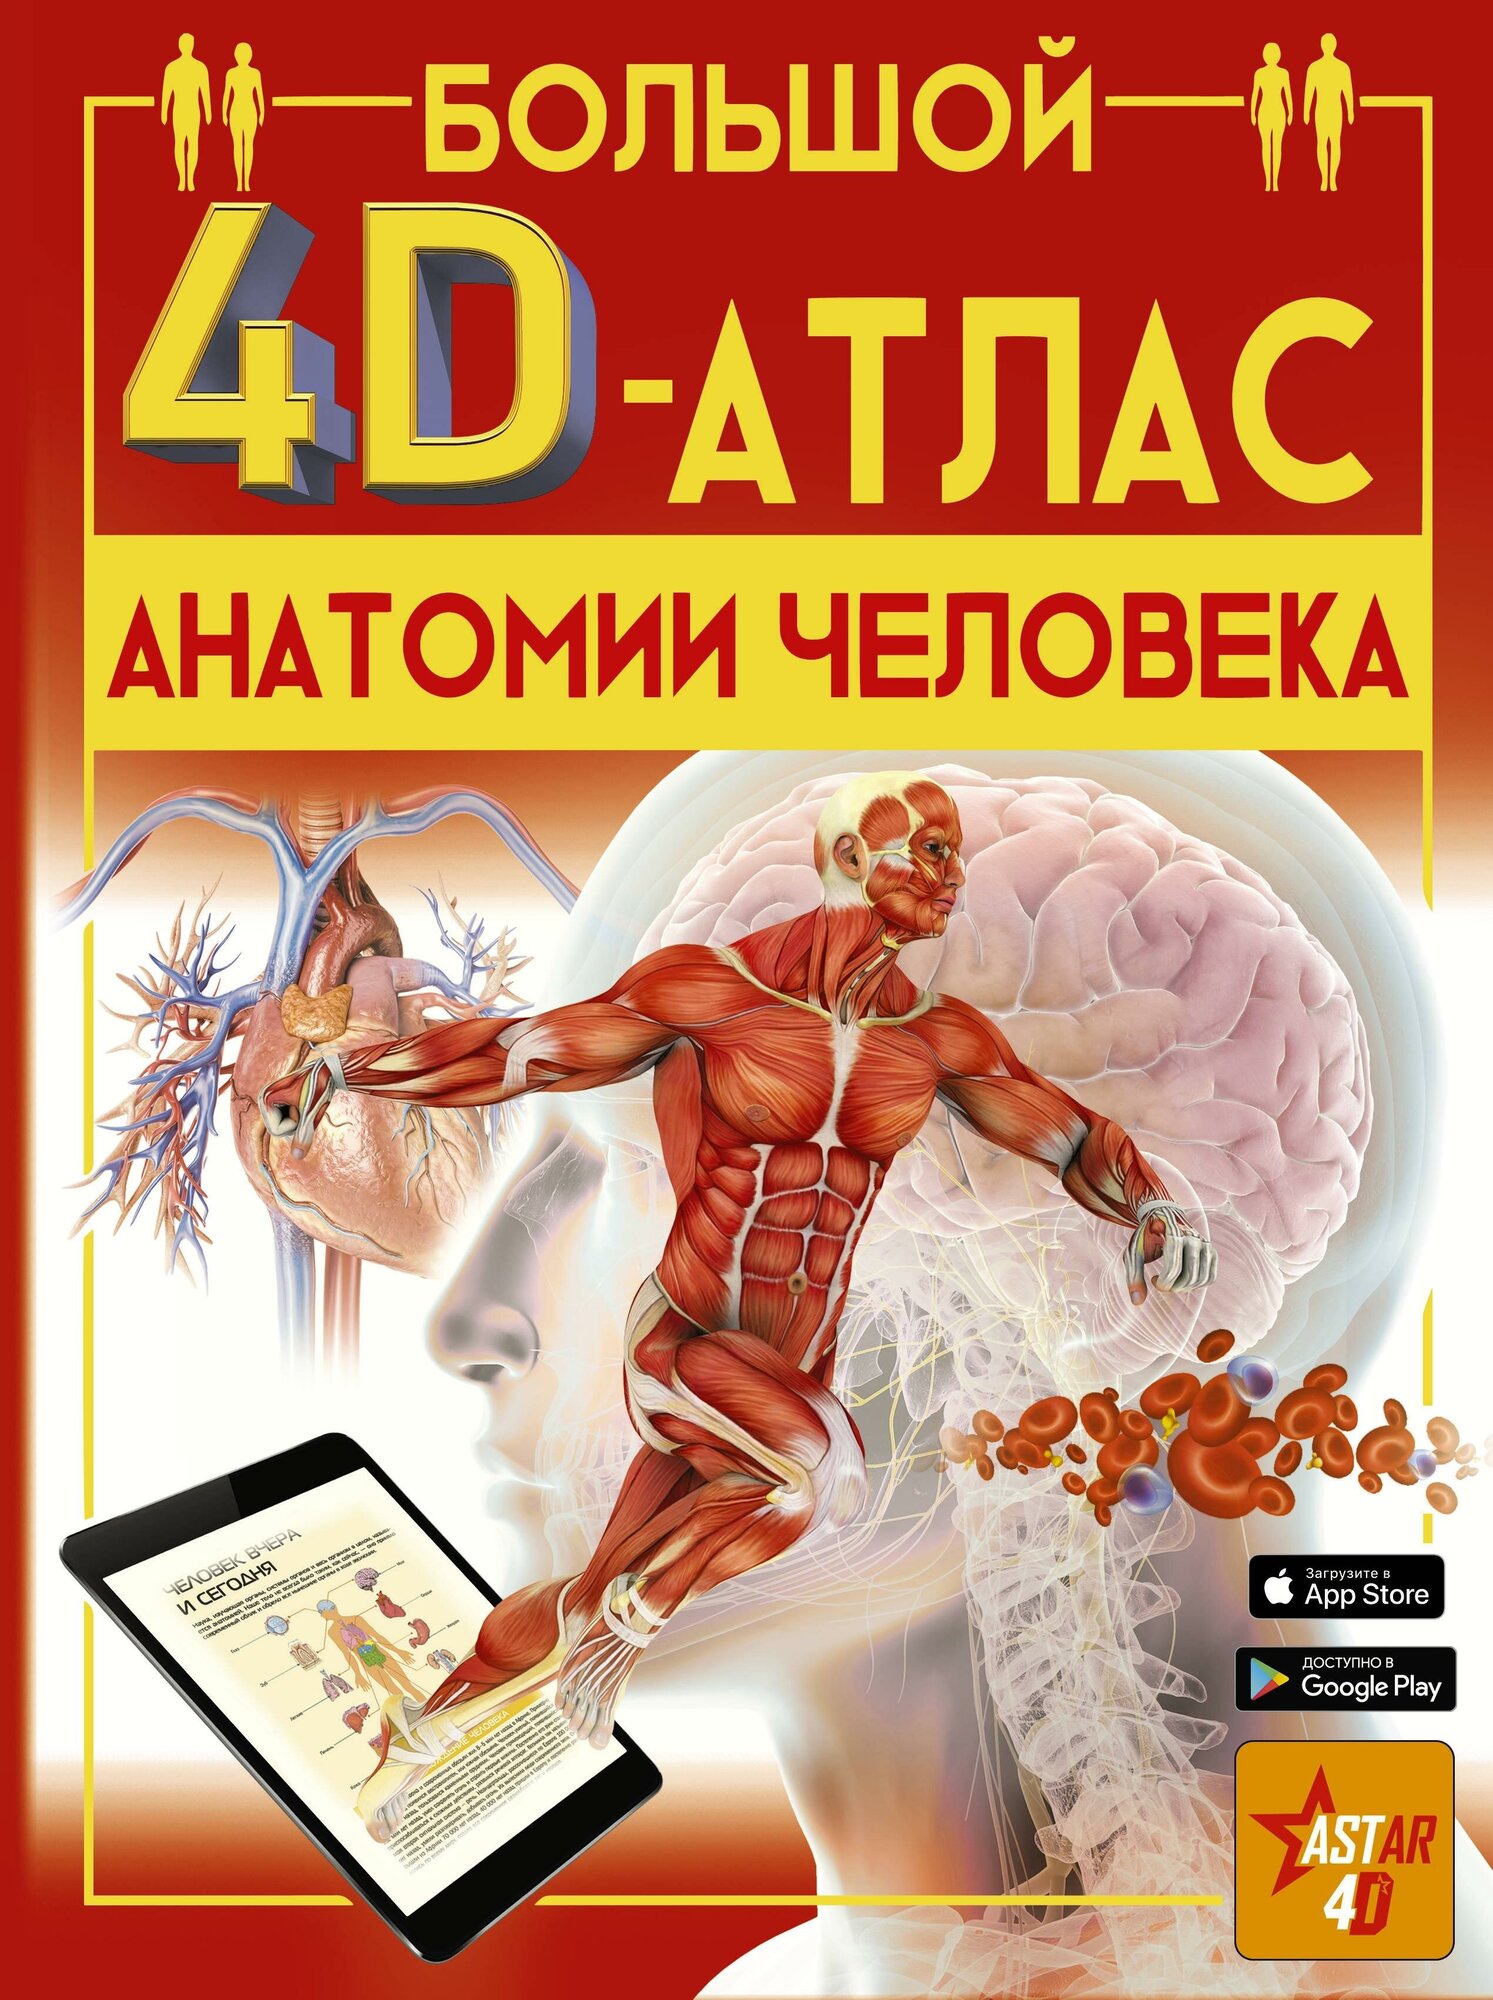 Спектор А. А. Большой 4D-атлас анатомии человека. Большой 4D атлас